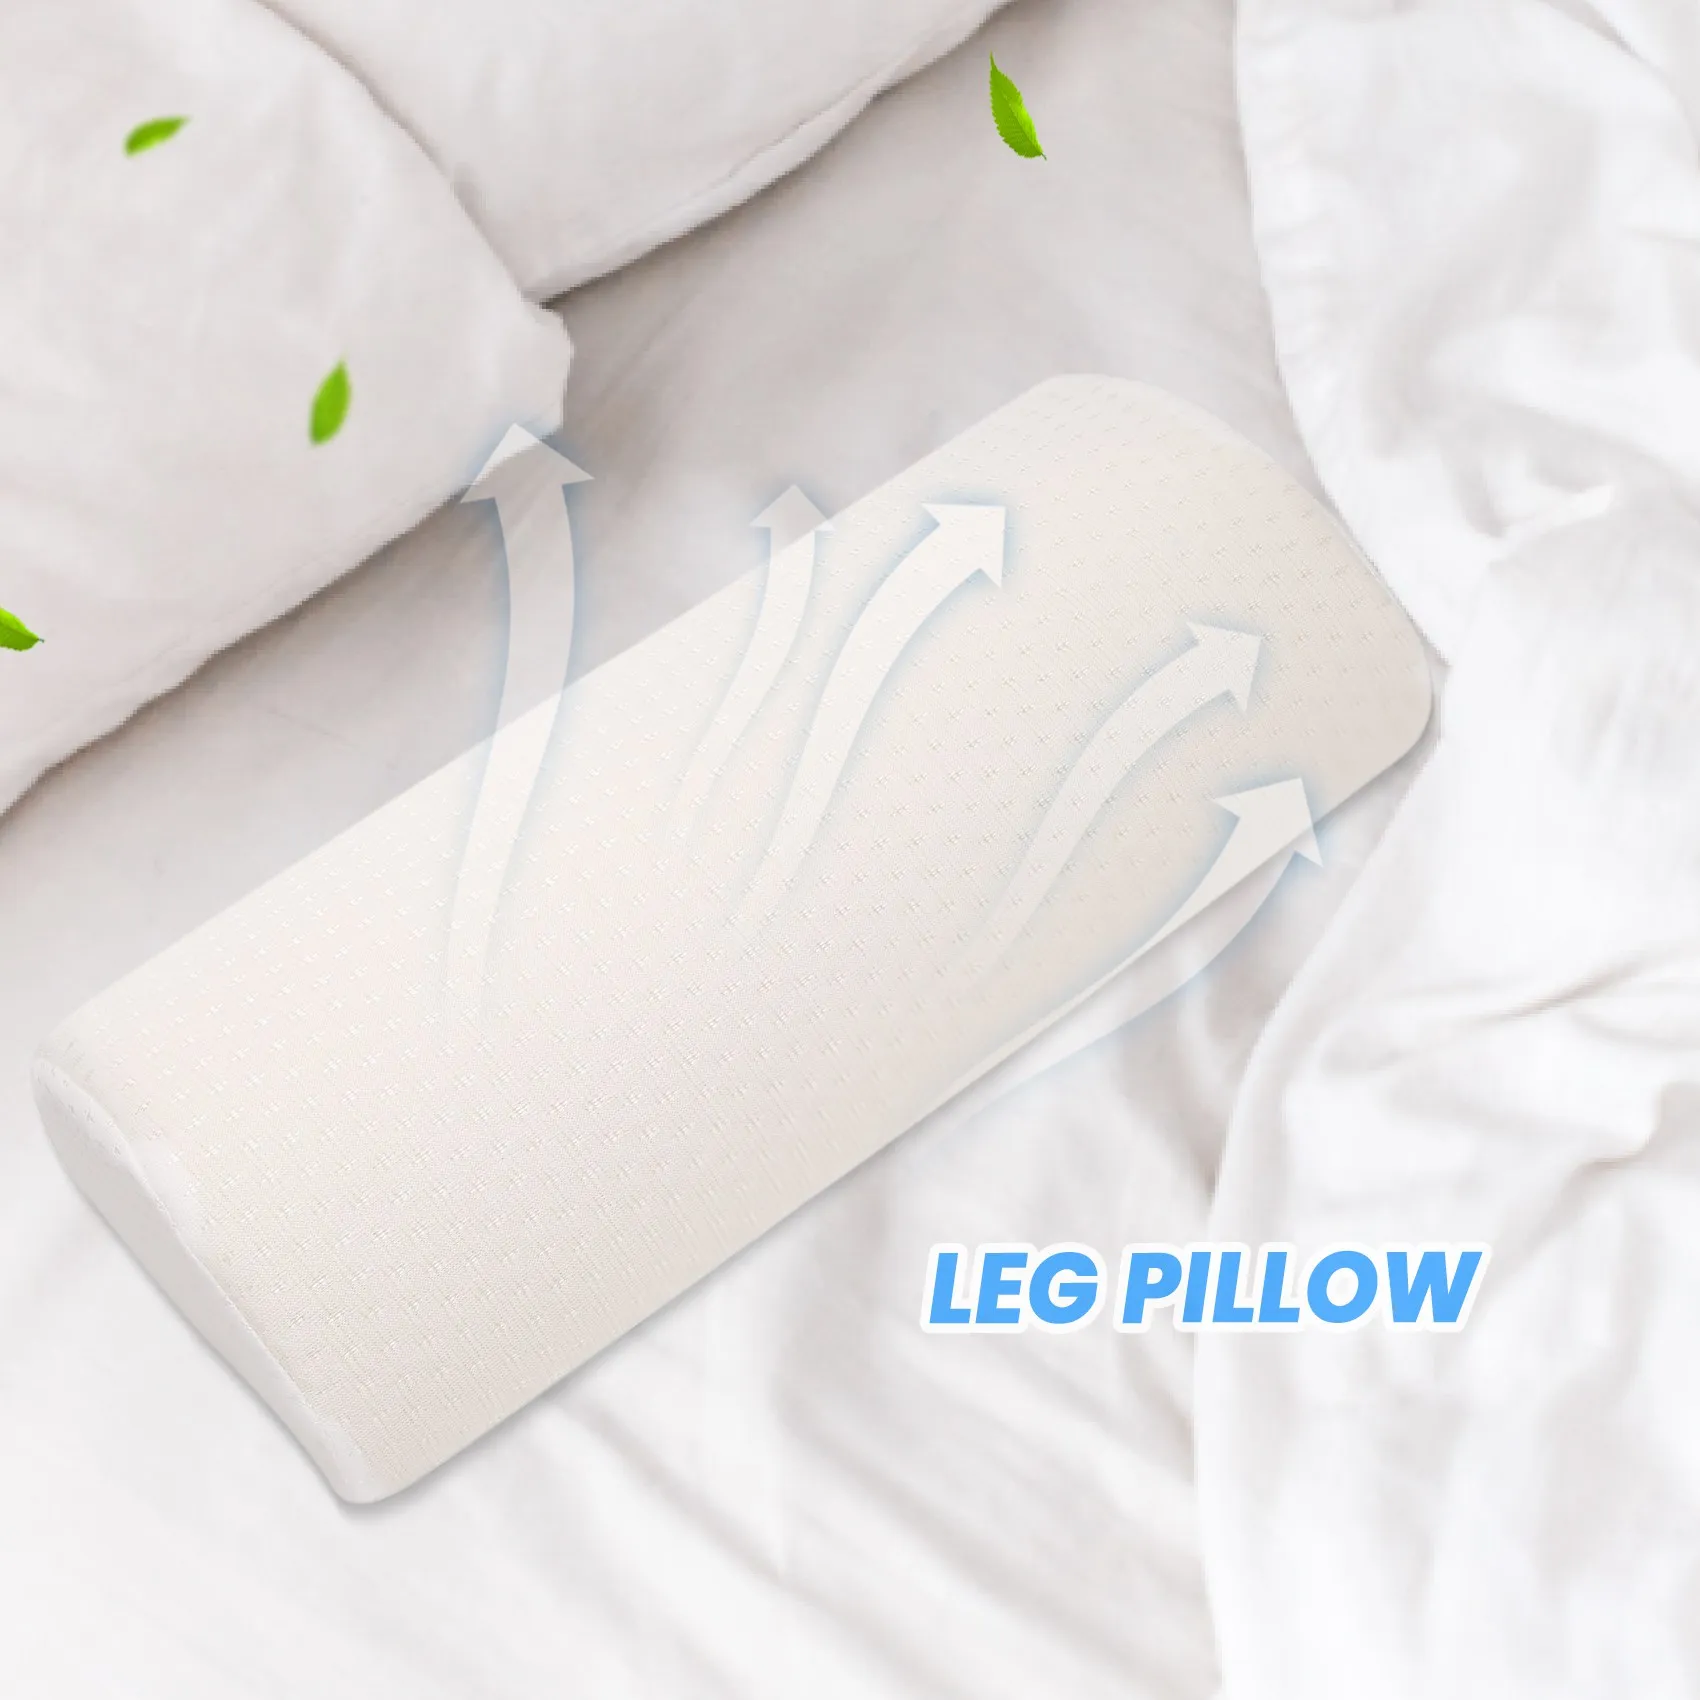 2 Pack Large Half Moon Bolster Pillow for Legs, Knees, Lower Back